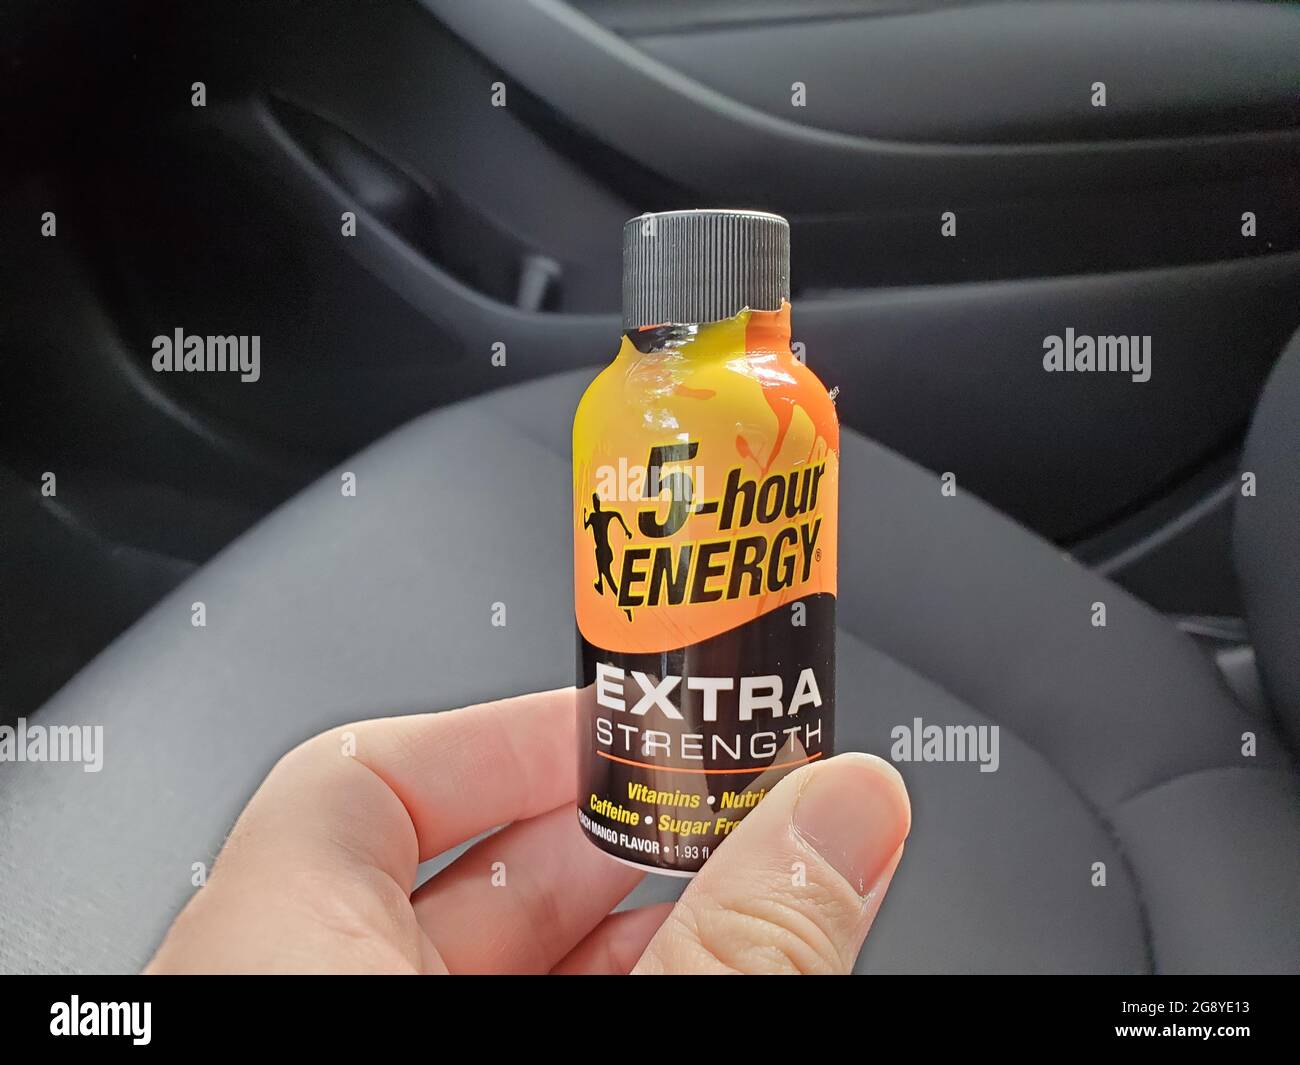 5 hour energy drink immagini e fotografie stock ad alta risoluzione - Alamy